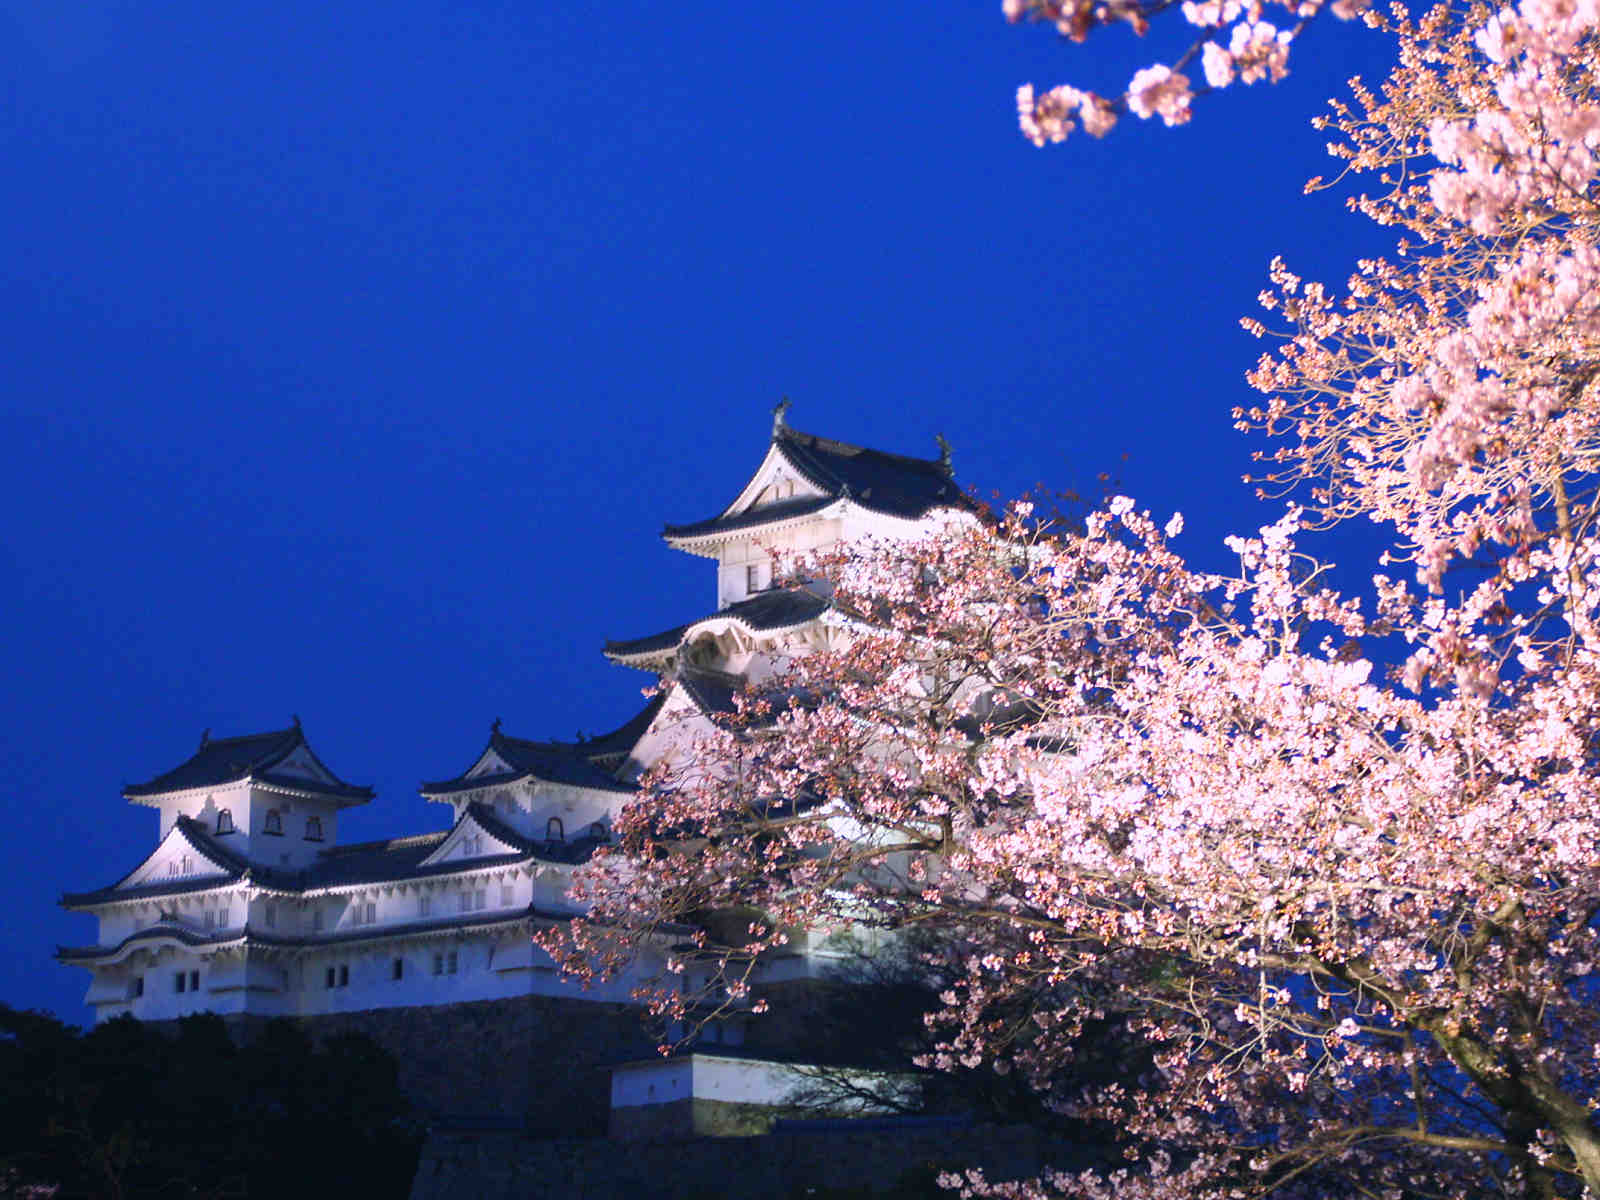 25 桜 壁紙 姫路城 最高の選択されたhdの壁紙画像